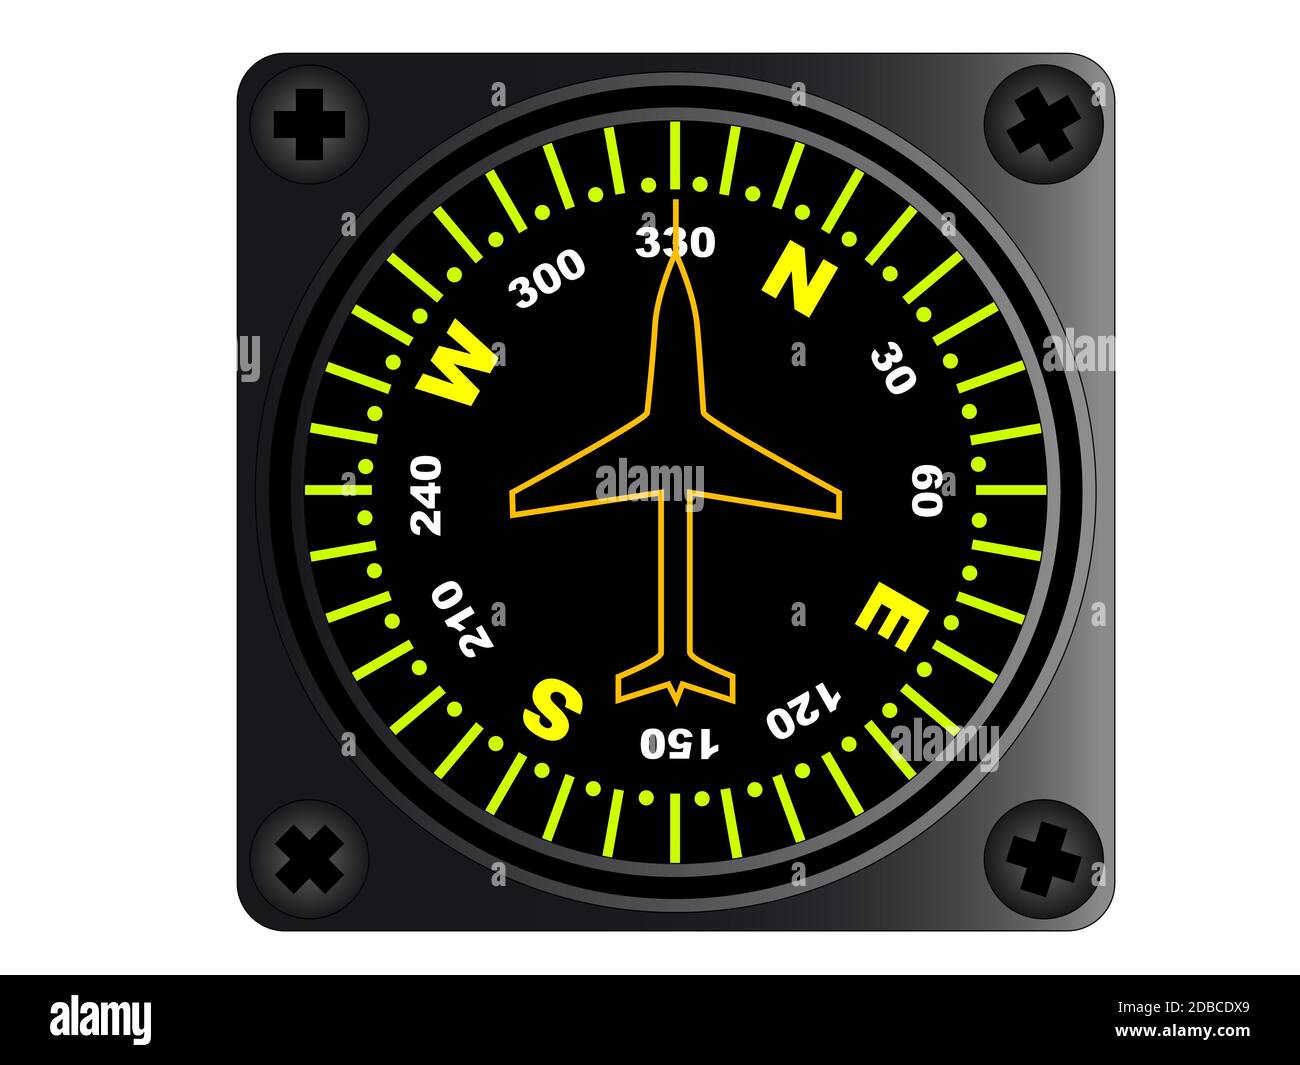 Компас в самолете. Авиационный компас. Магнитный компас самолета. Воздушный компас.